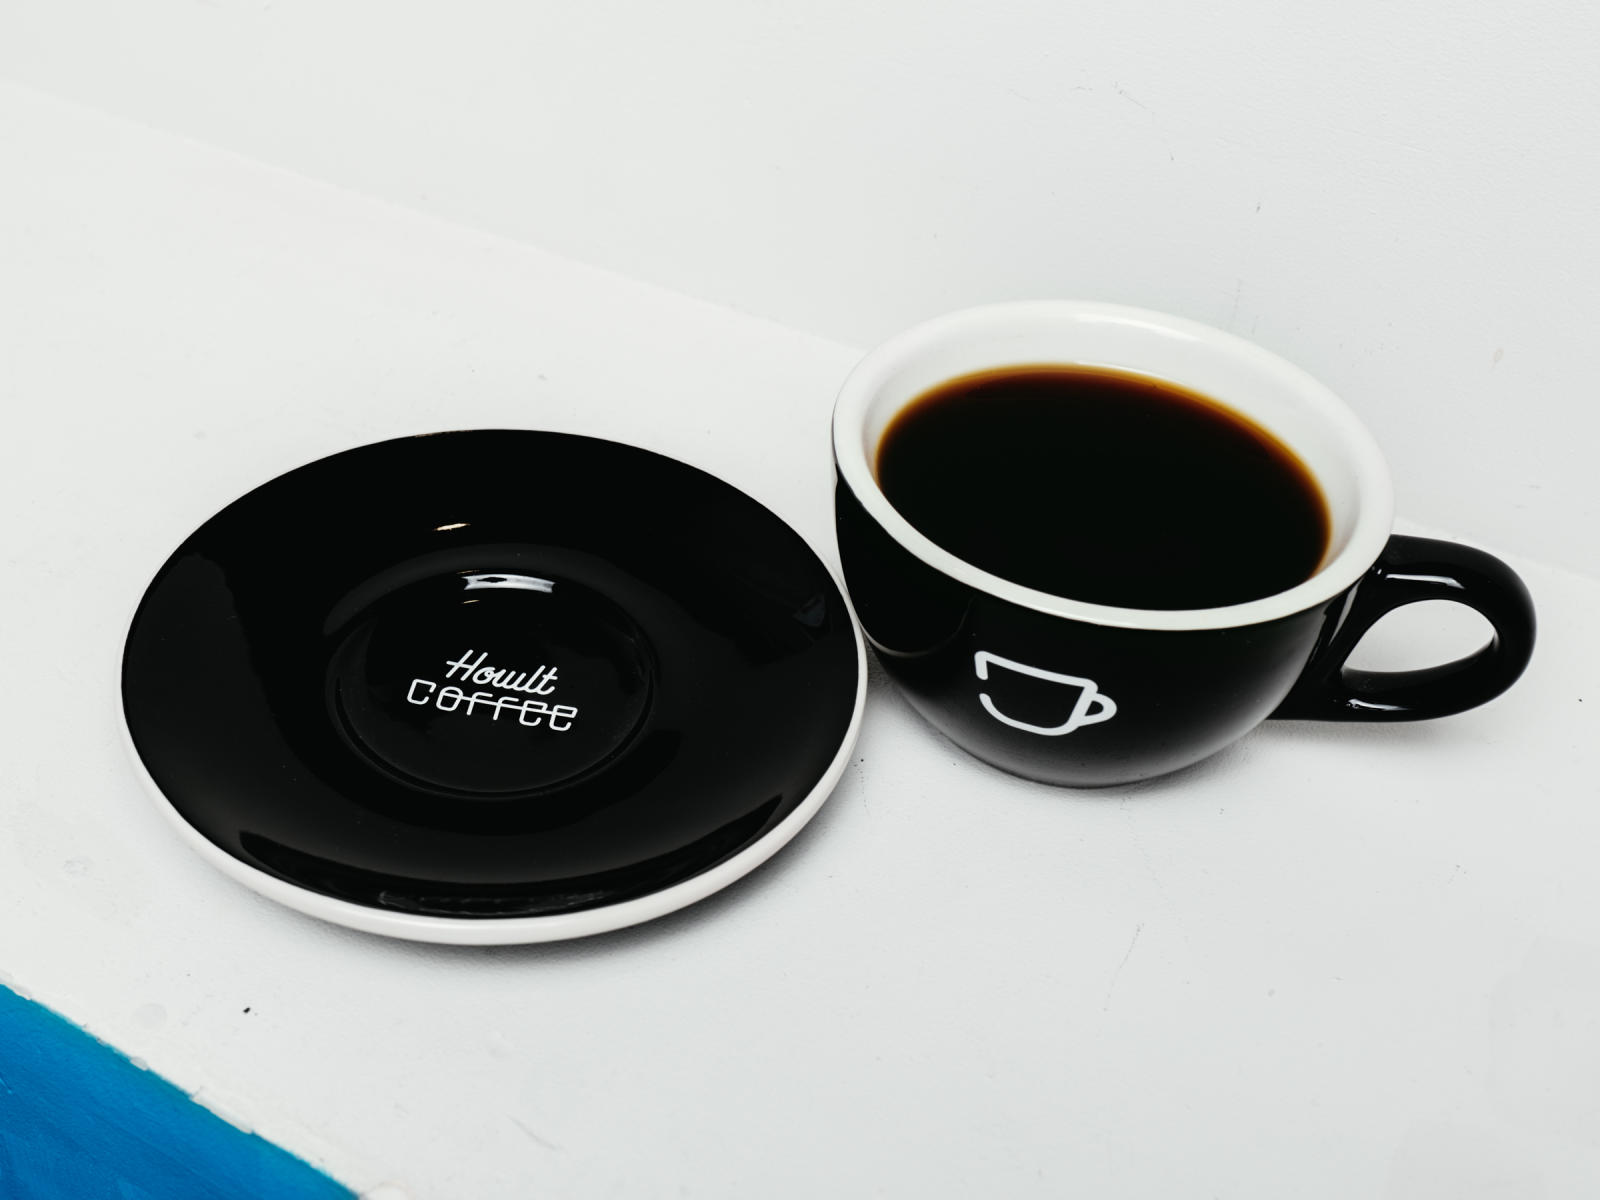 エスプレッソパーツ x ホルトコーヒーラテカップ、福岡のカフェホルトコーヒーにて販売中